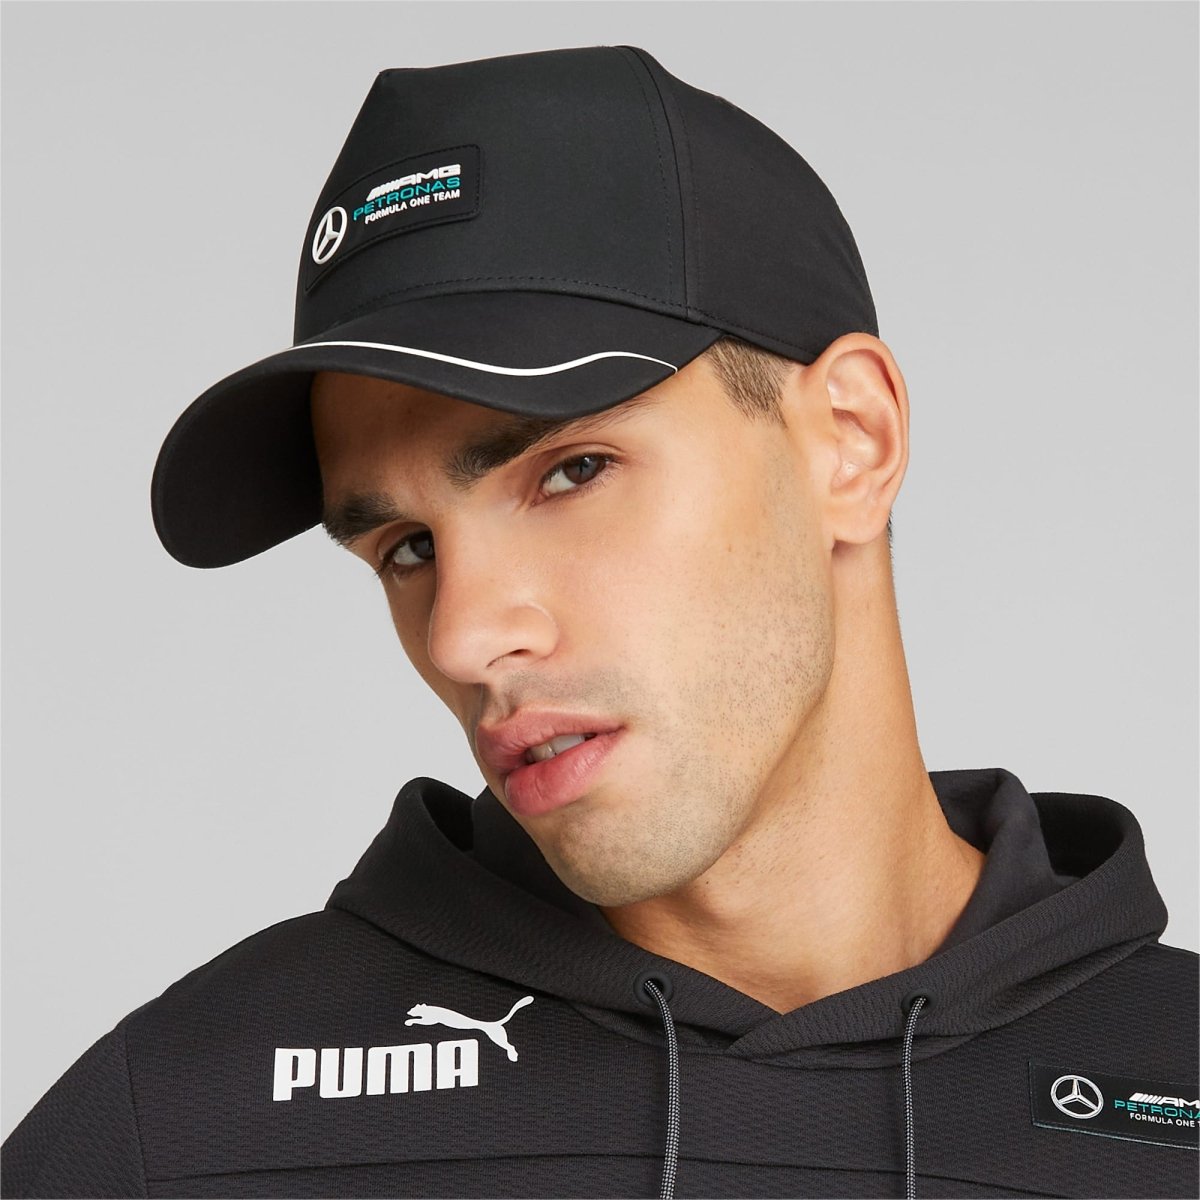 Puma PUMA MERCEDES-AMG PETRONAS MOTORSPORT BLACK CAP - INSPORT